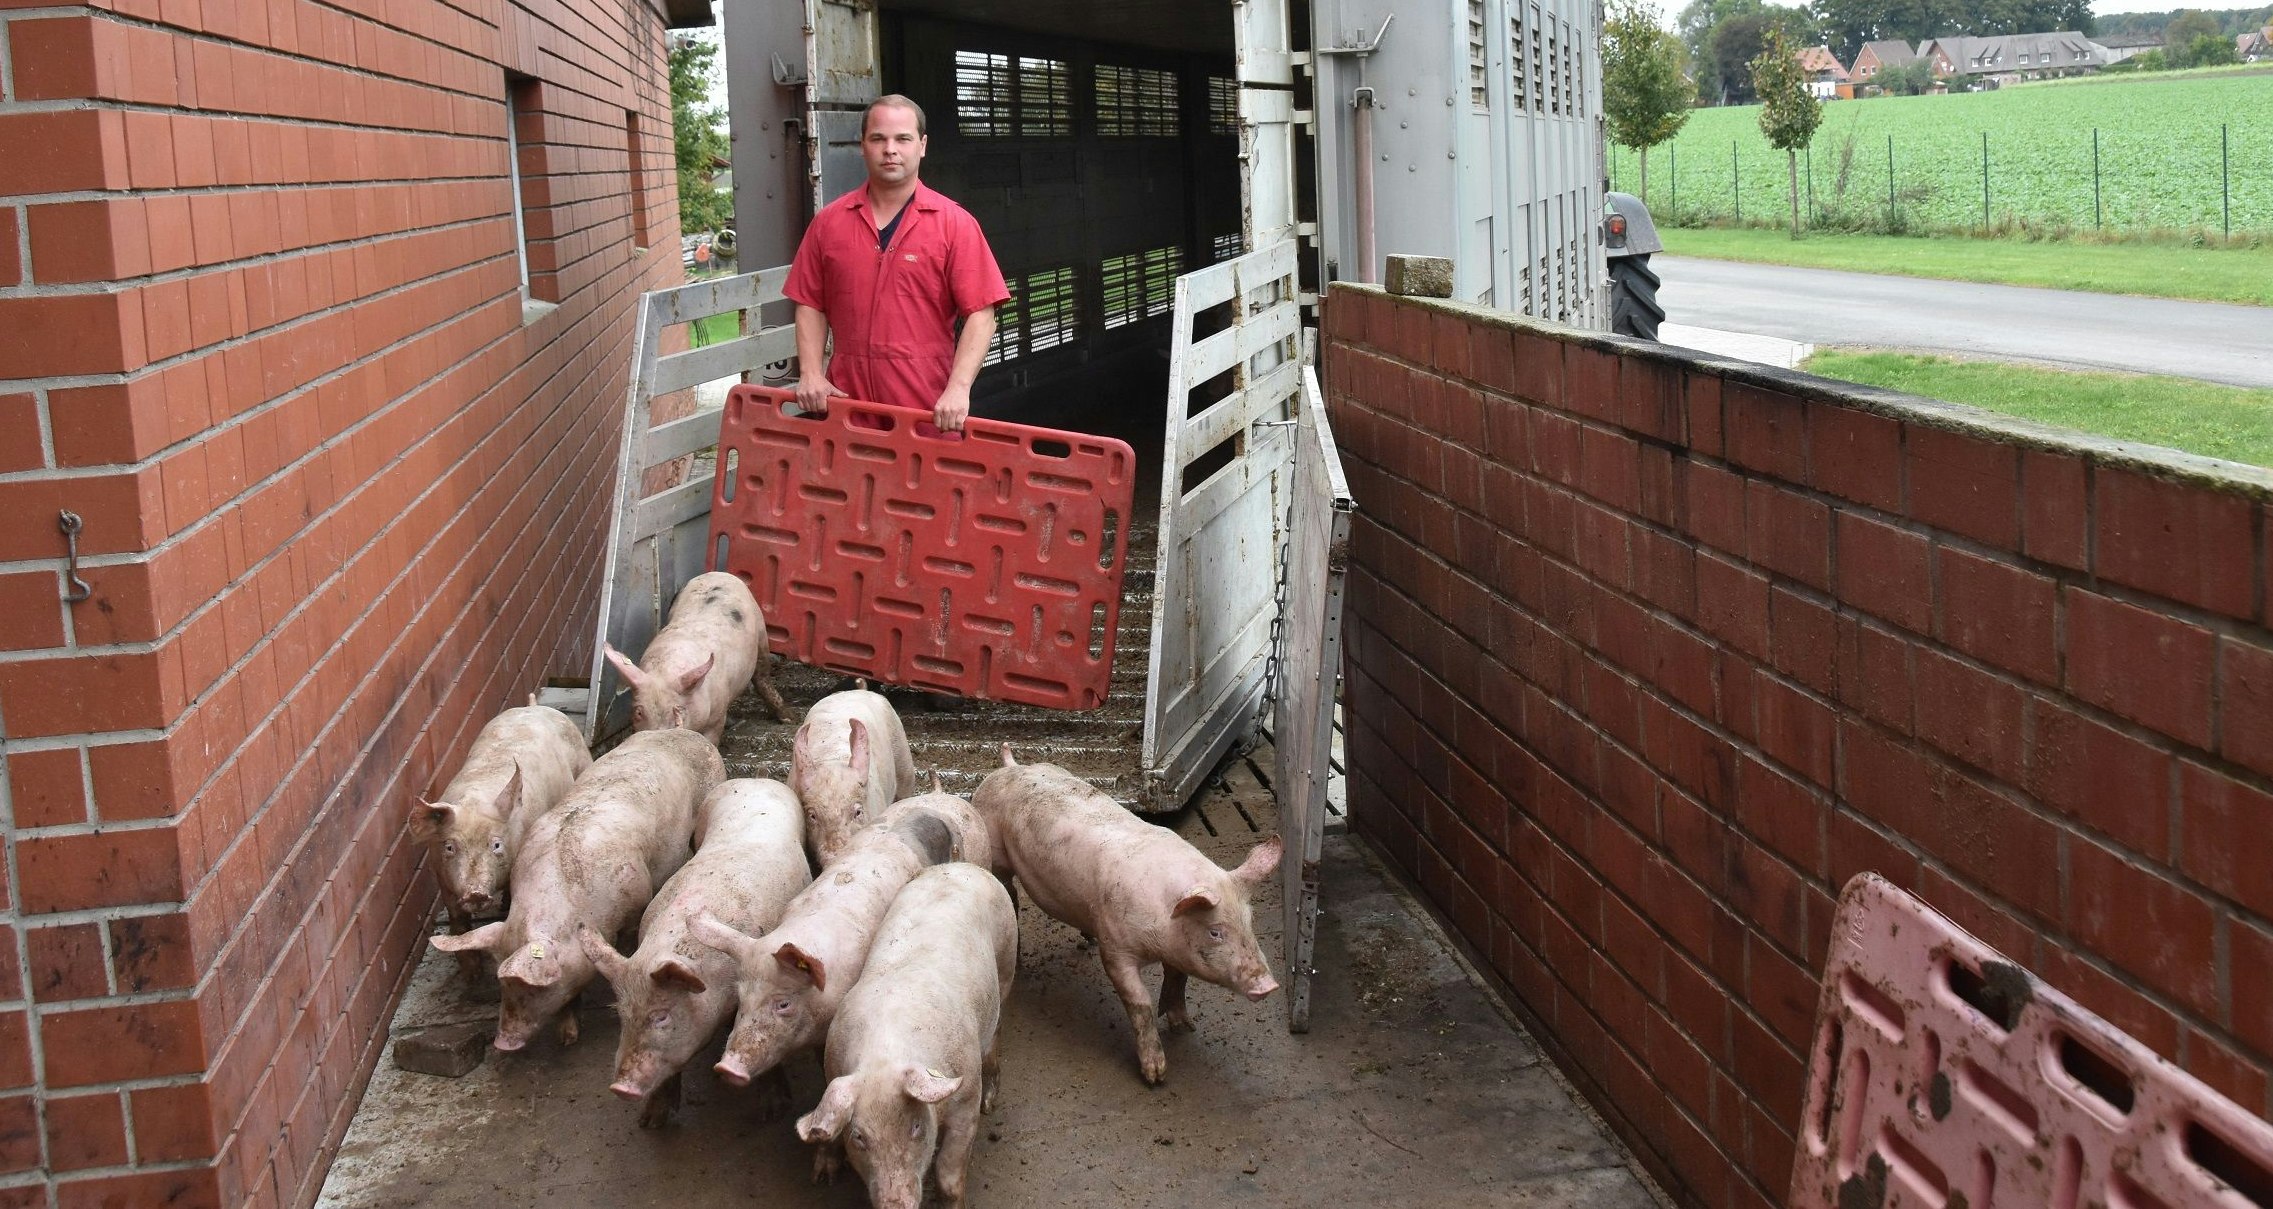 Neue Ferkel: Sören Meyer leitet die Jungtiere aus eigener Erzeugung in den Maststall. Dass es darin Platz für neue Schweine gibt, ist derzeit nicht selbstverständlich. Foto: Tzimurtas